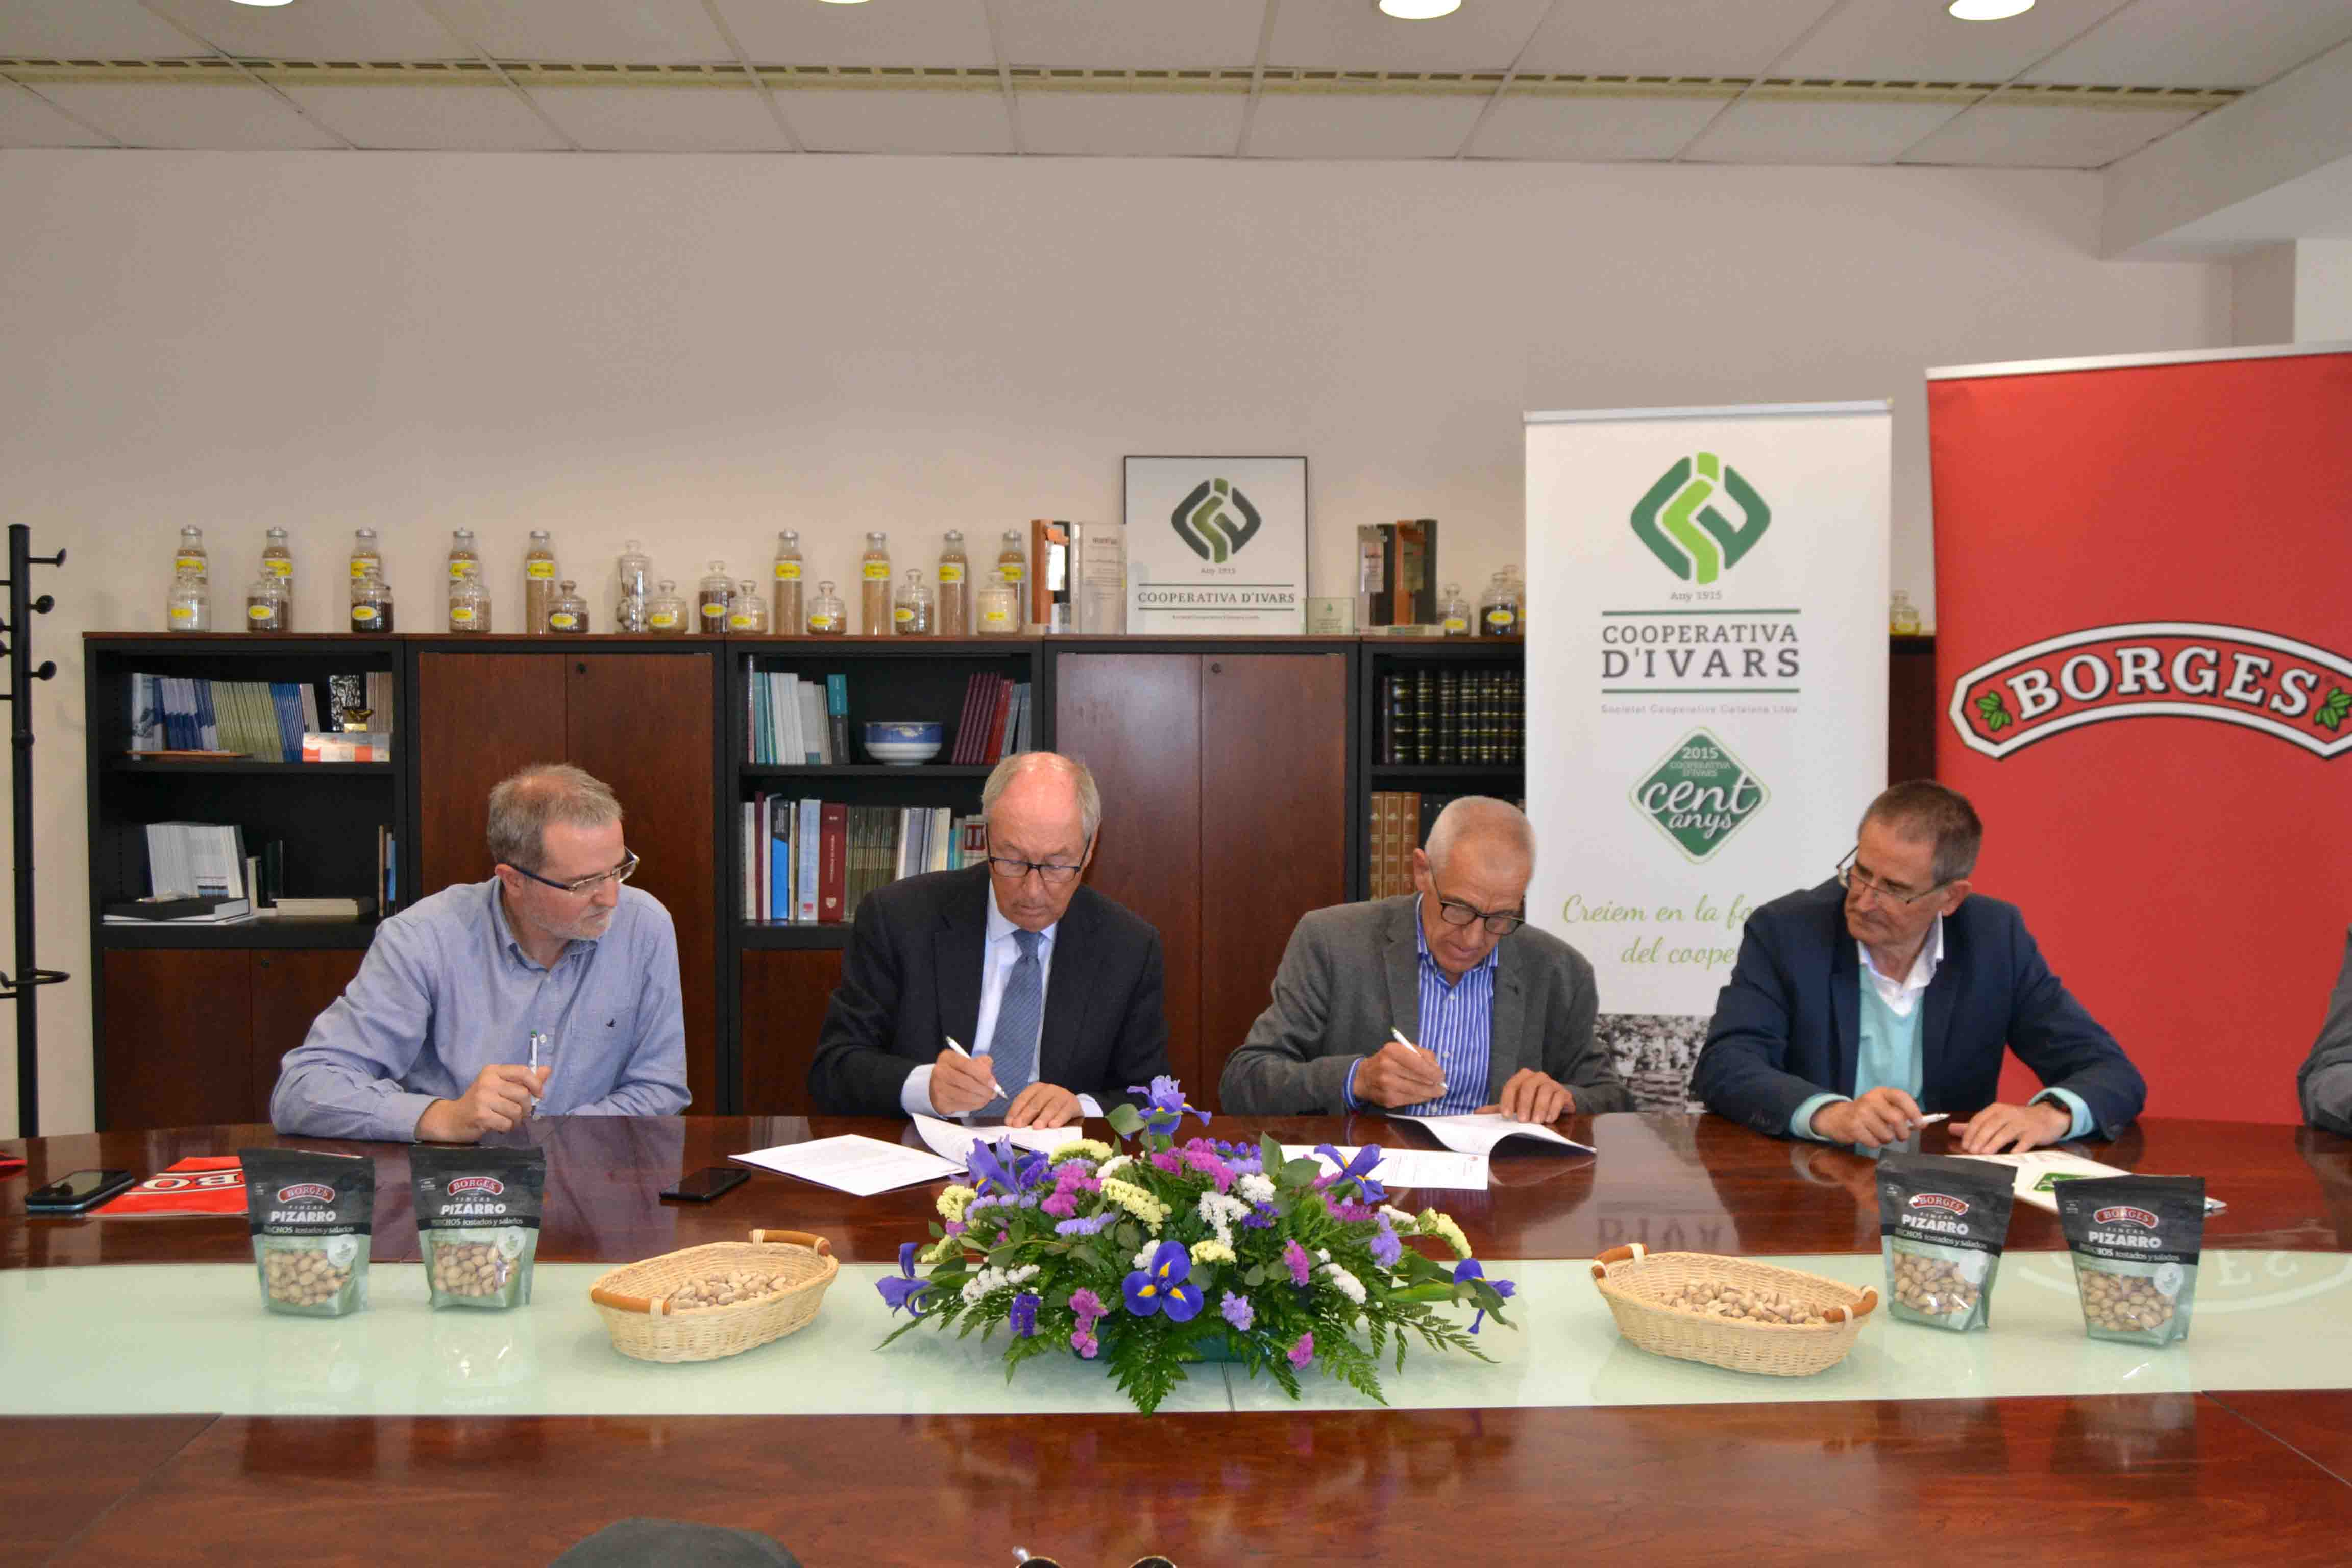 Borges Agricultural & Industrial Nuts i la Cooperativa d’Ivars signen un acord de cooperació vertical pel desenvolupament del cultiu de pistatxos